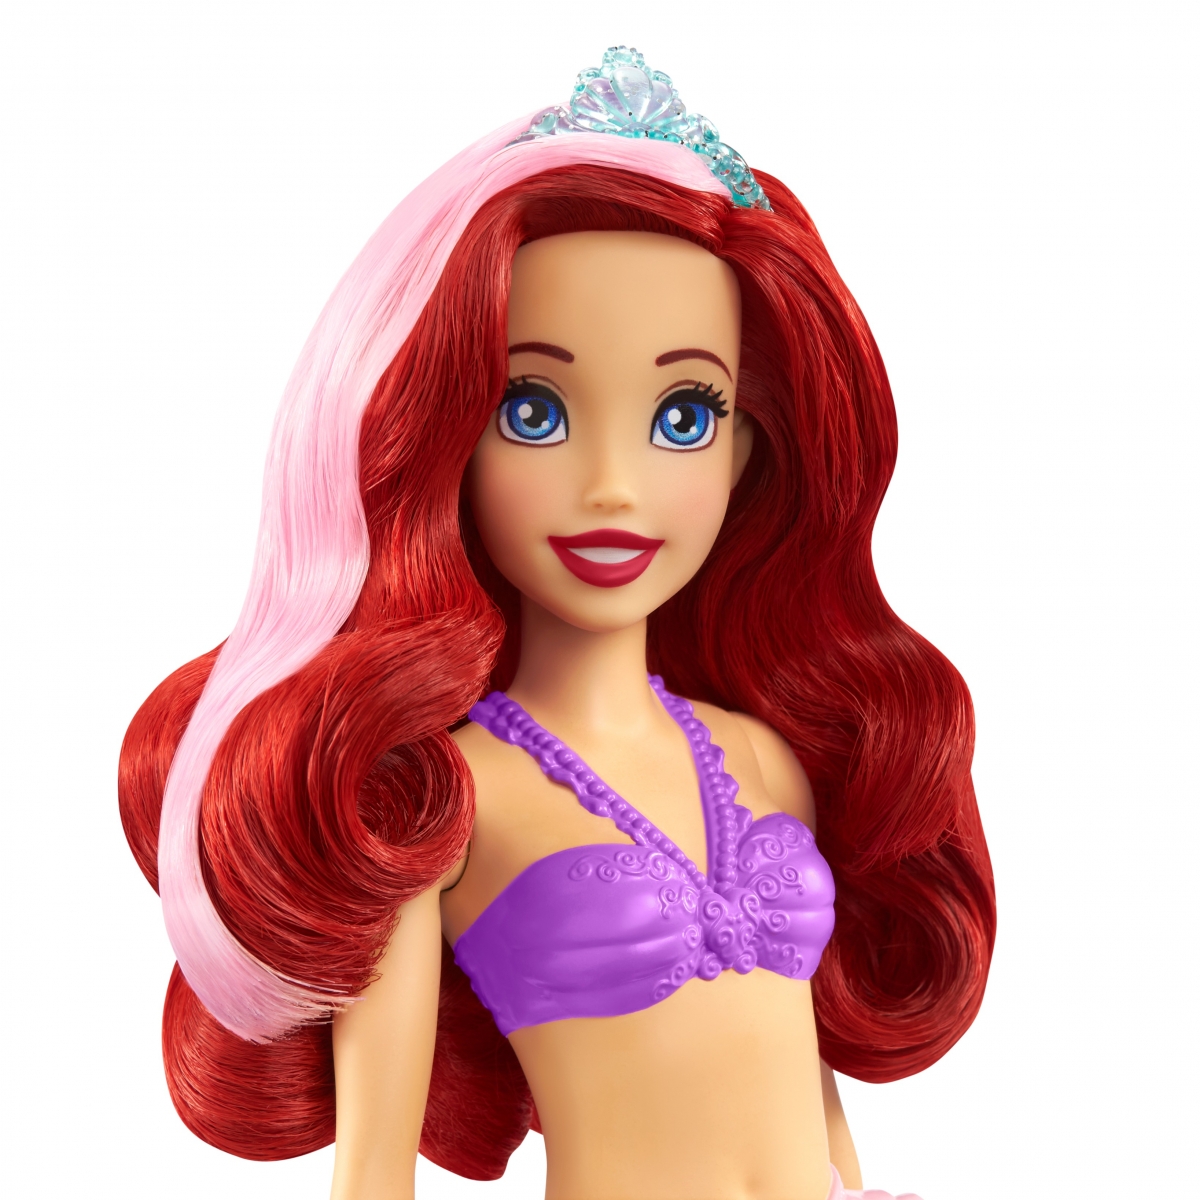 Disney Princess Fashion Core Doll Asst. Ariel Hair Feature Doll Lelle HLW00